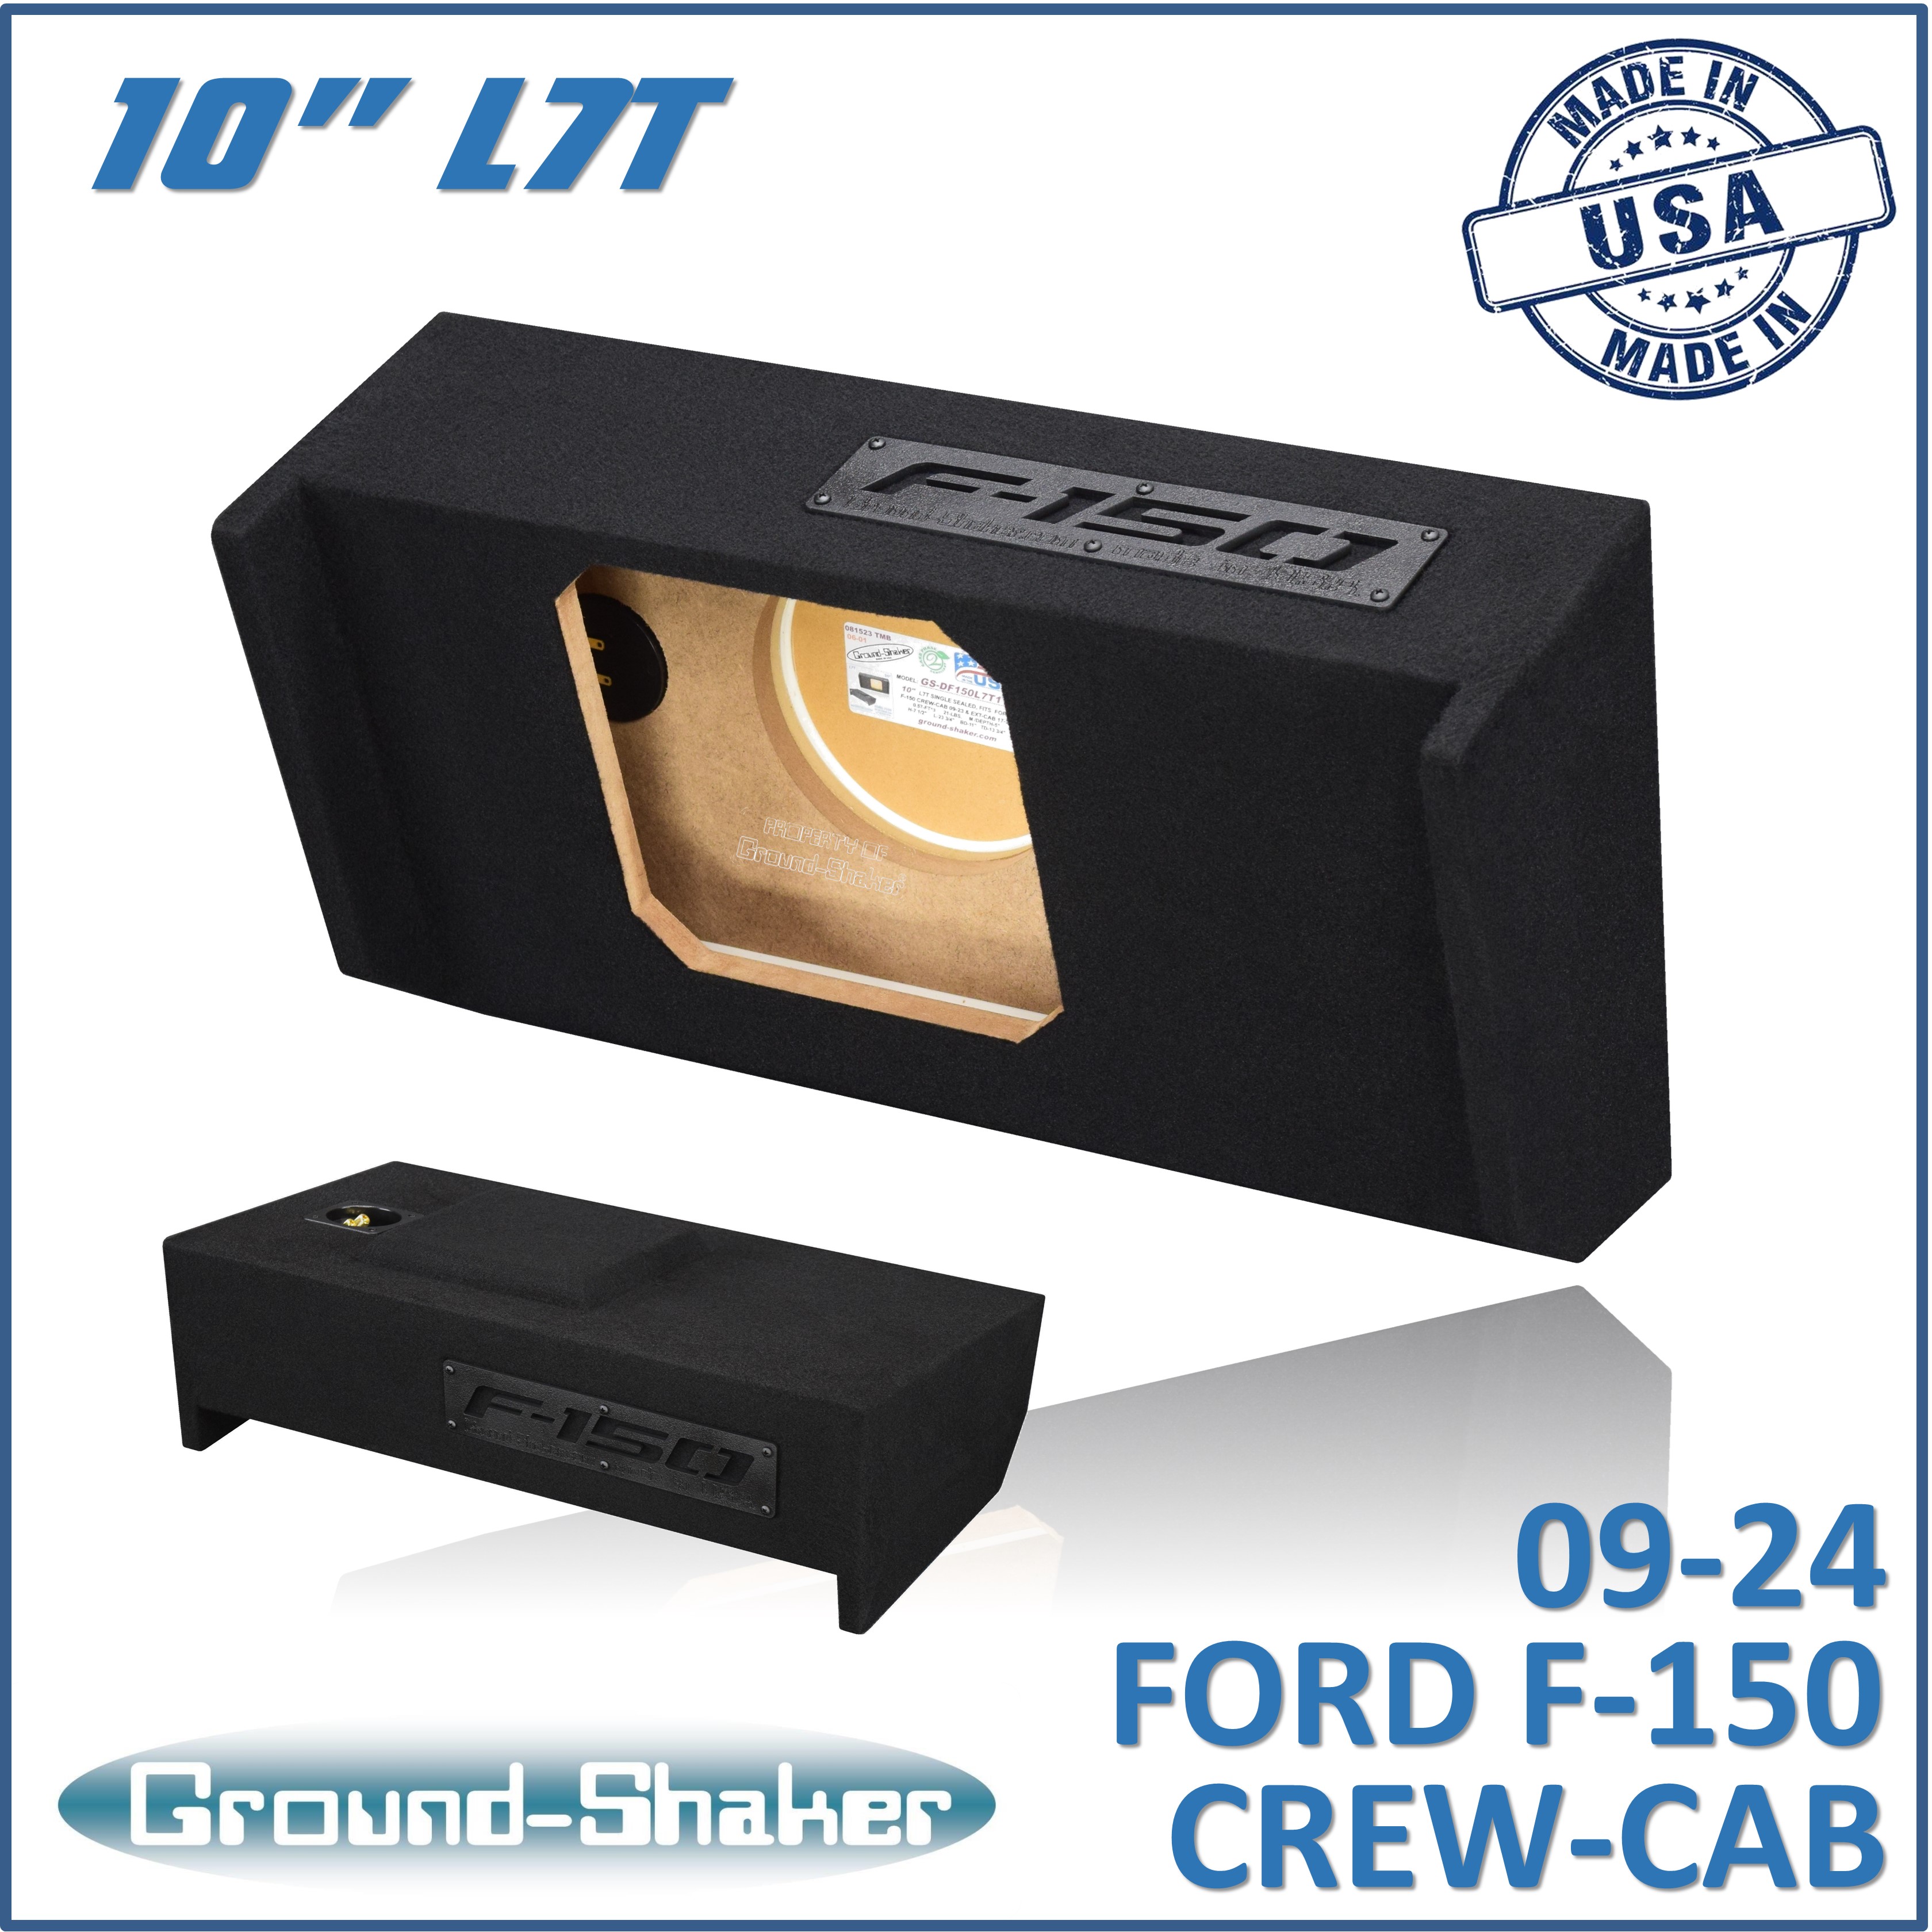 BLACK 10 SINGLE SEALED L7T SUB BOX, FITS 09-24 FORD F-150 CREW-CAB